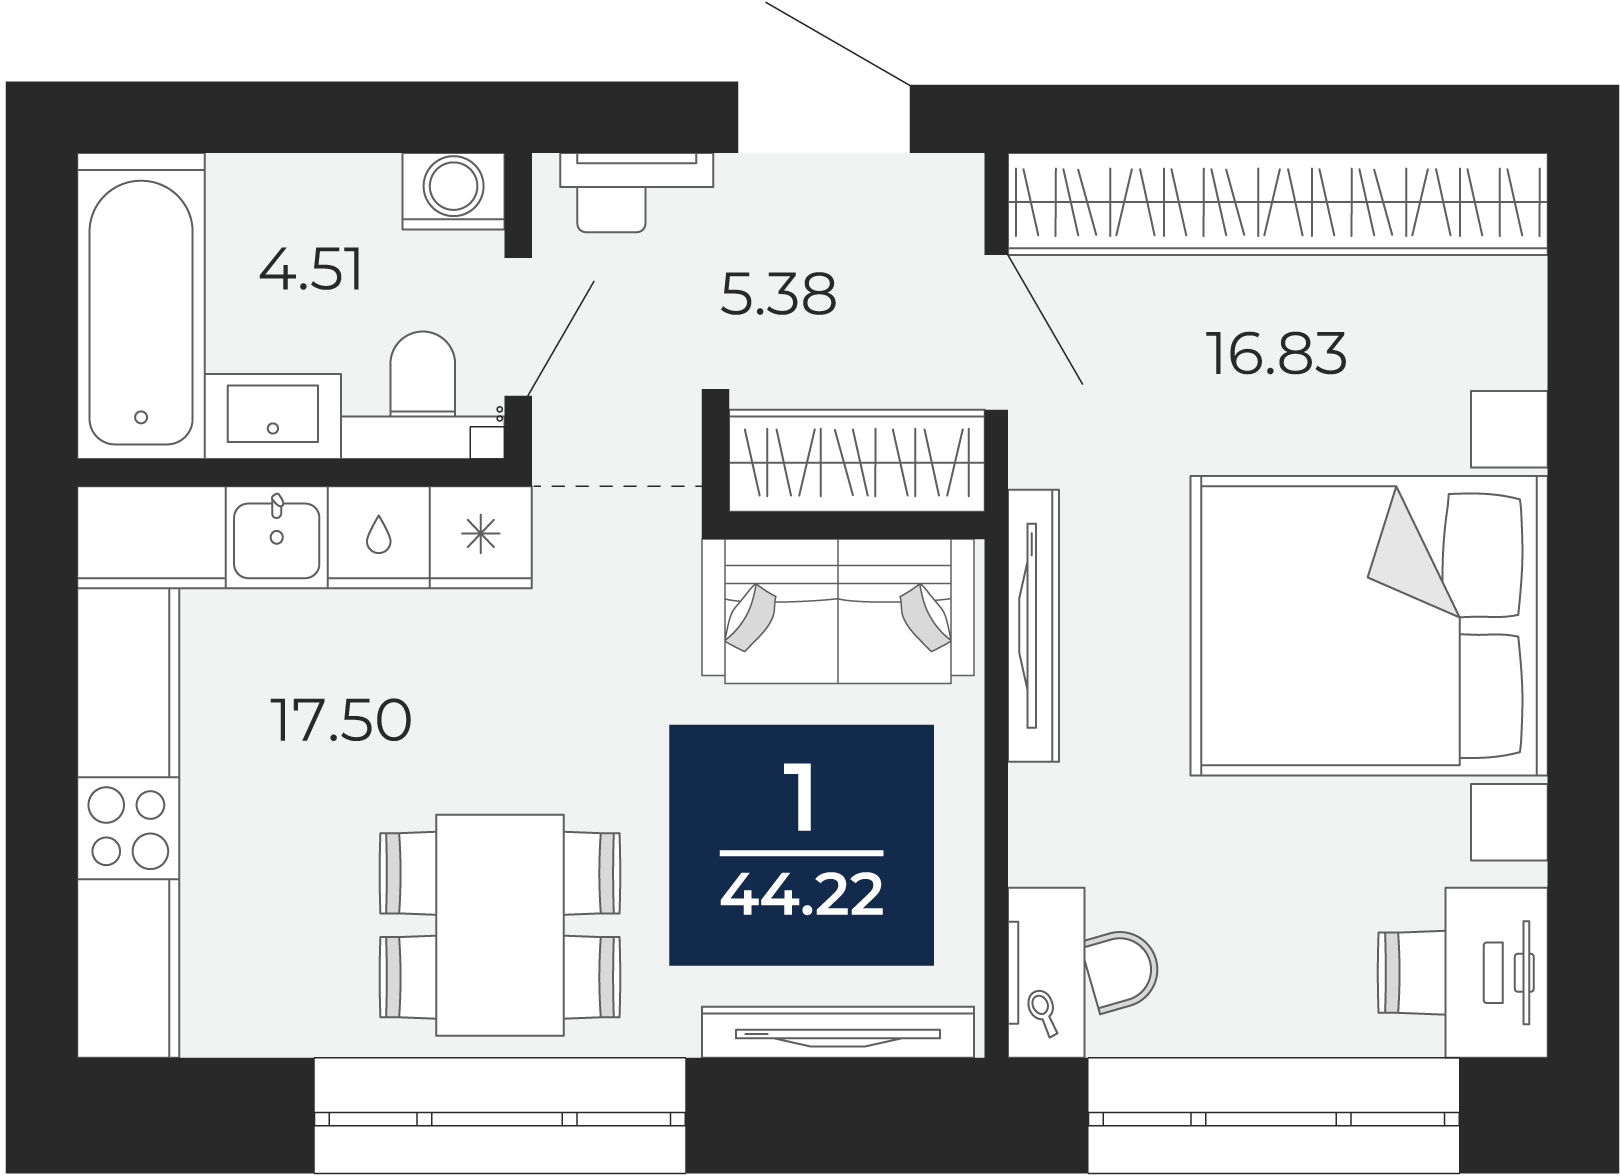 Квартира № 7, 1-комнатная, 44.22 кв. м, 2 этаж